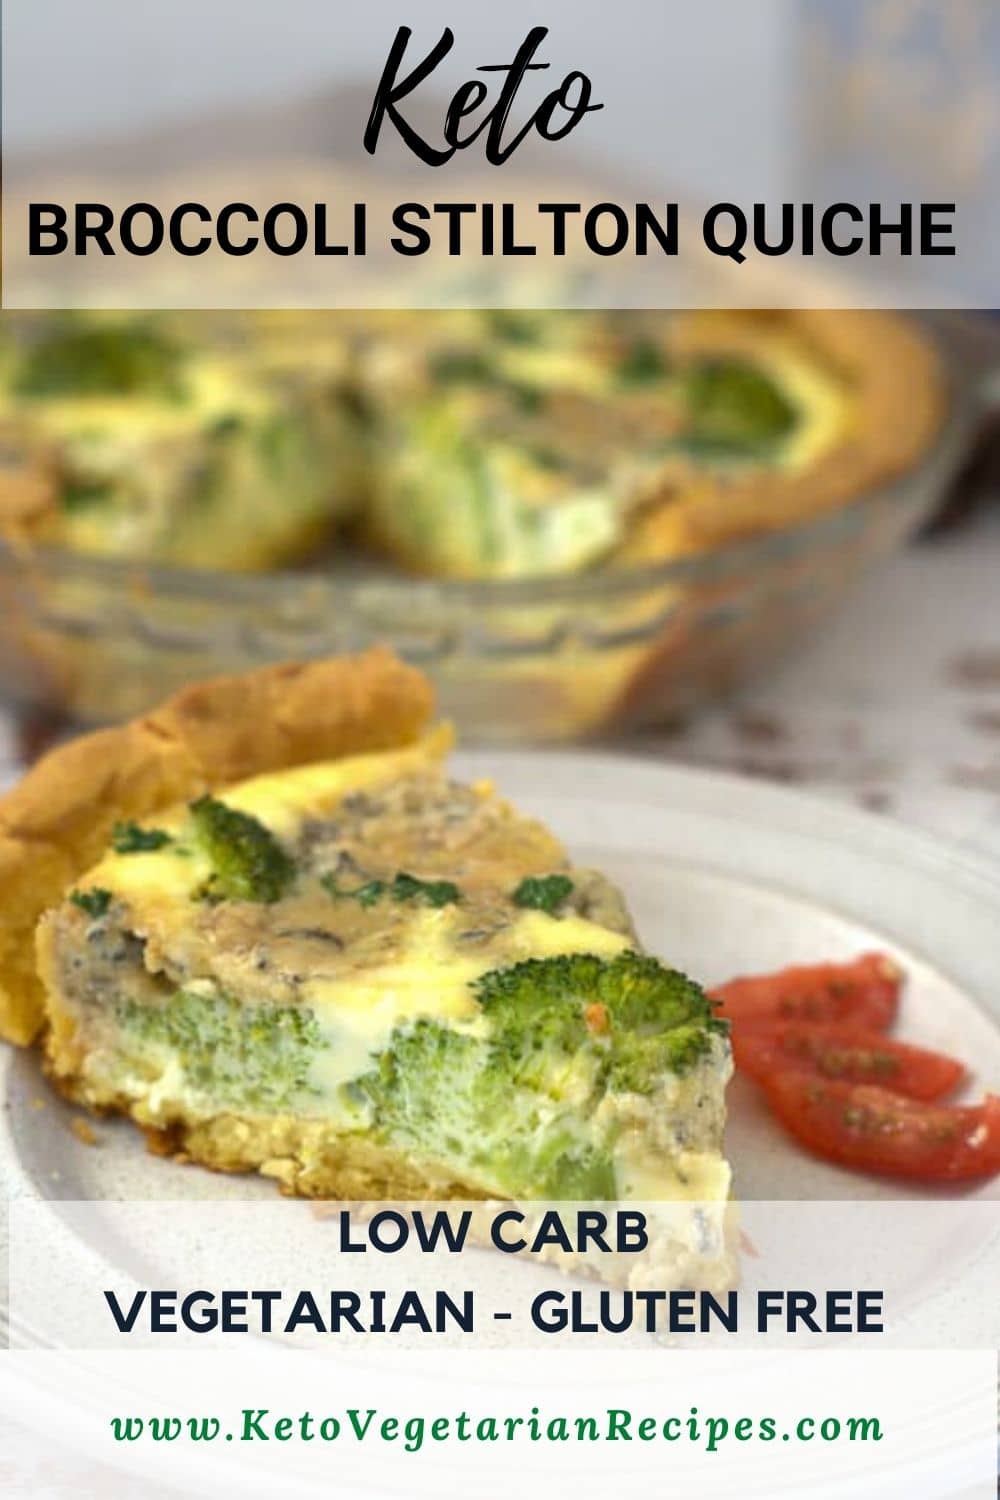 Broccoli Stilton Quiche - Keto & Low Carb Vegetarian Recipes